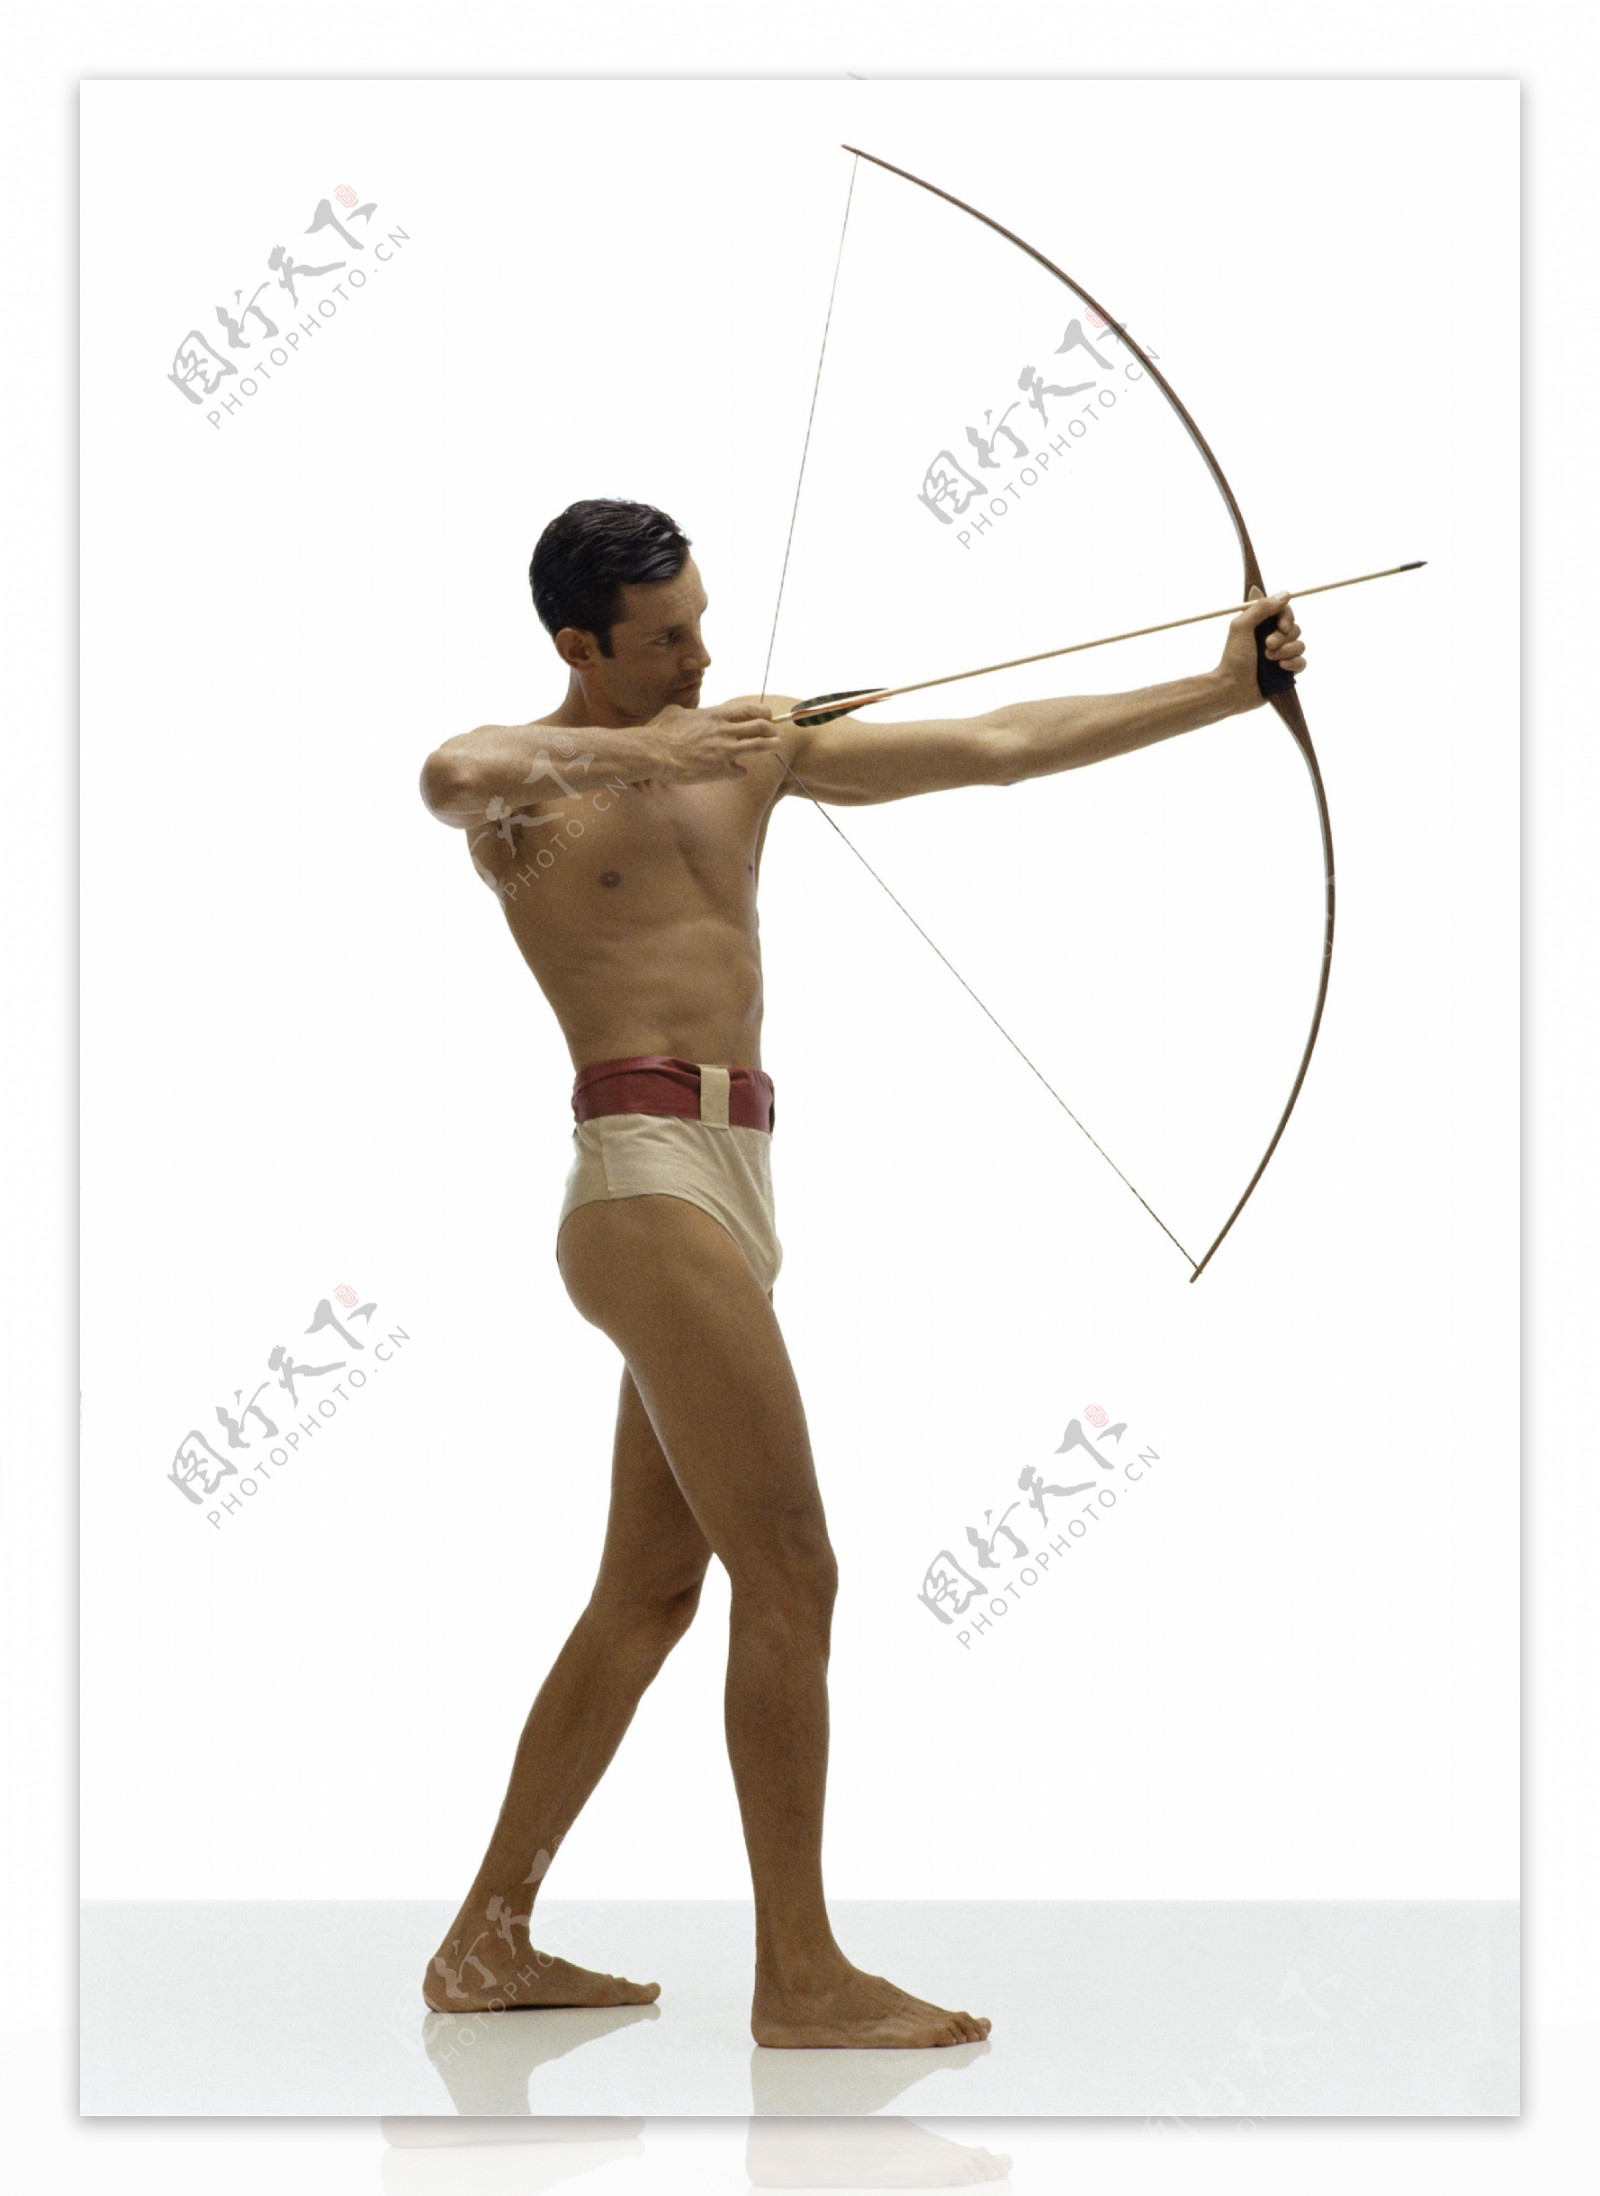 古代奥运会的射箭男性运动员图片